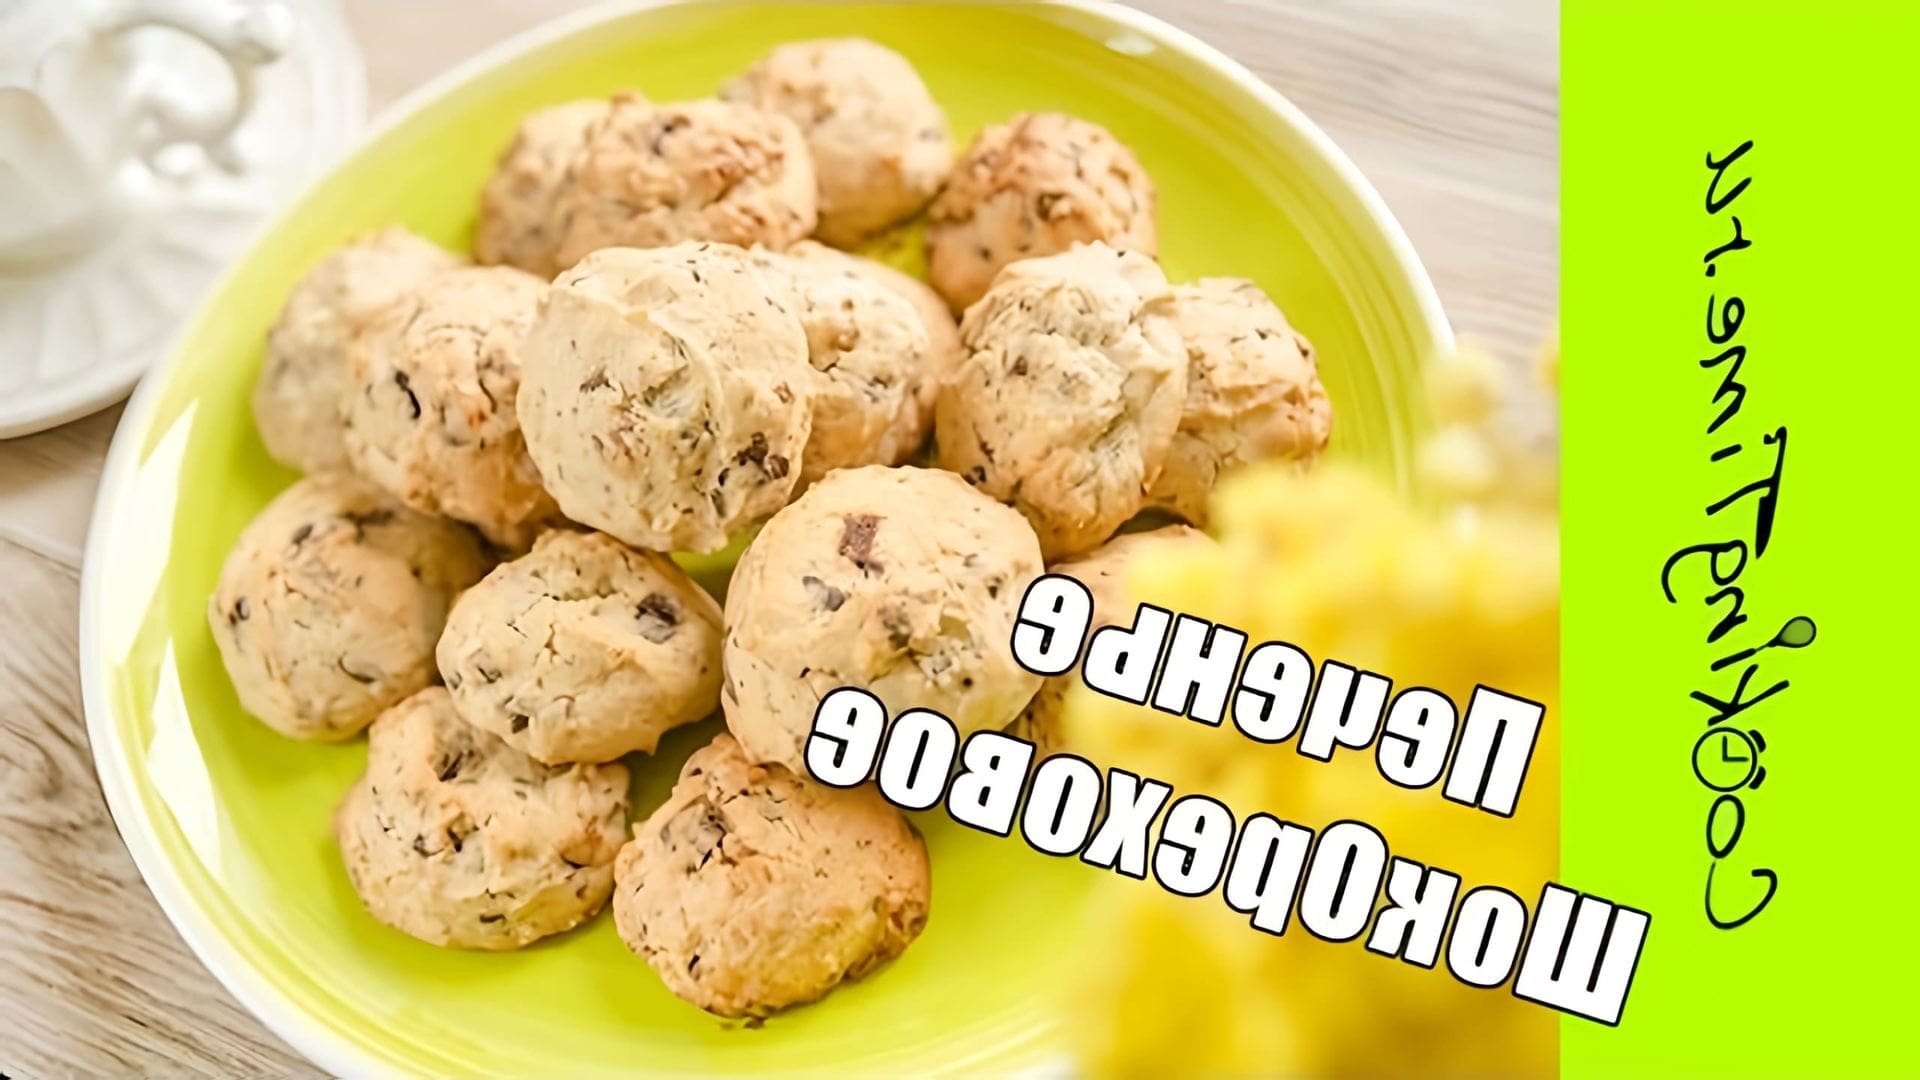 В этом видео демонстрируется простой рецепт печенья с орехами и шоколадом